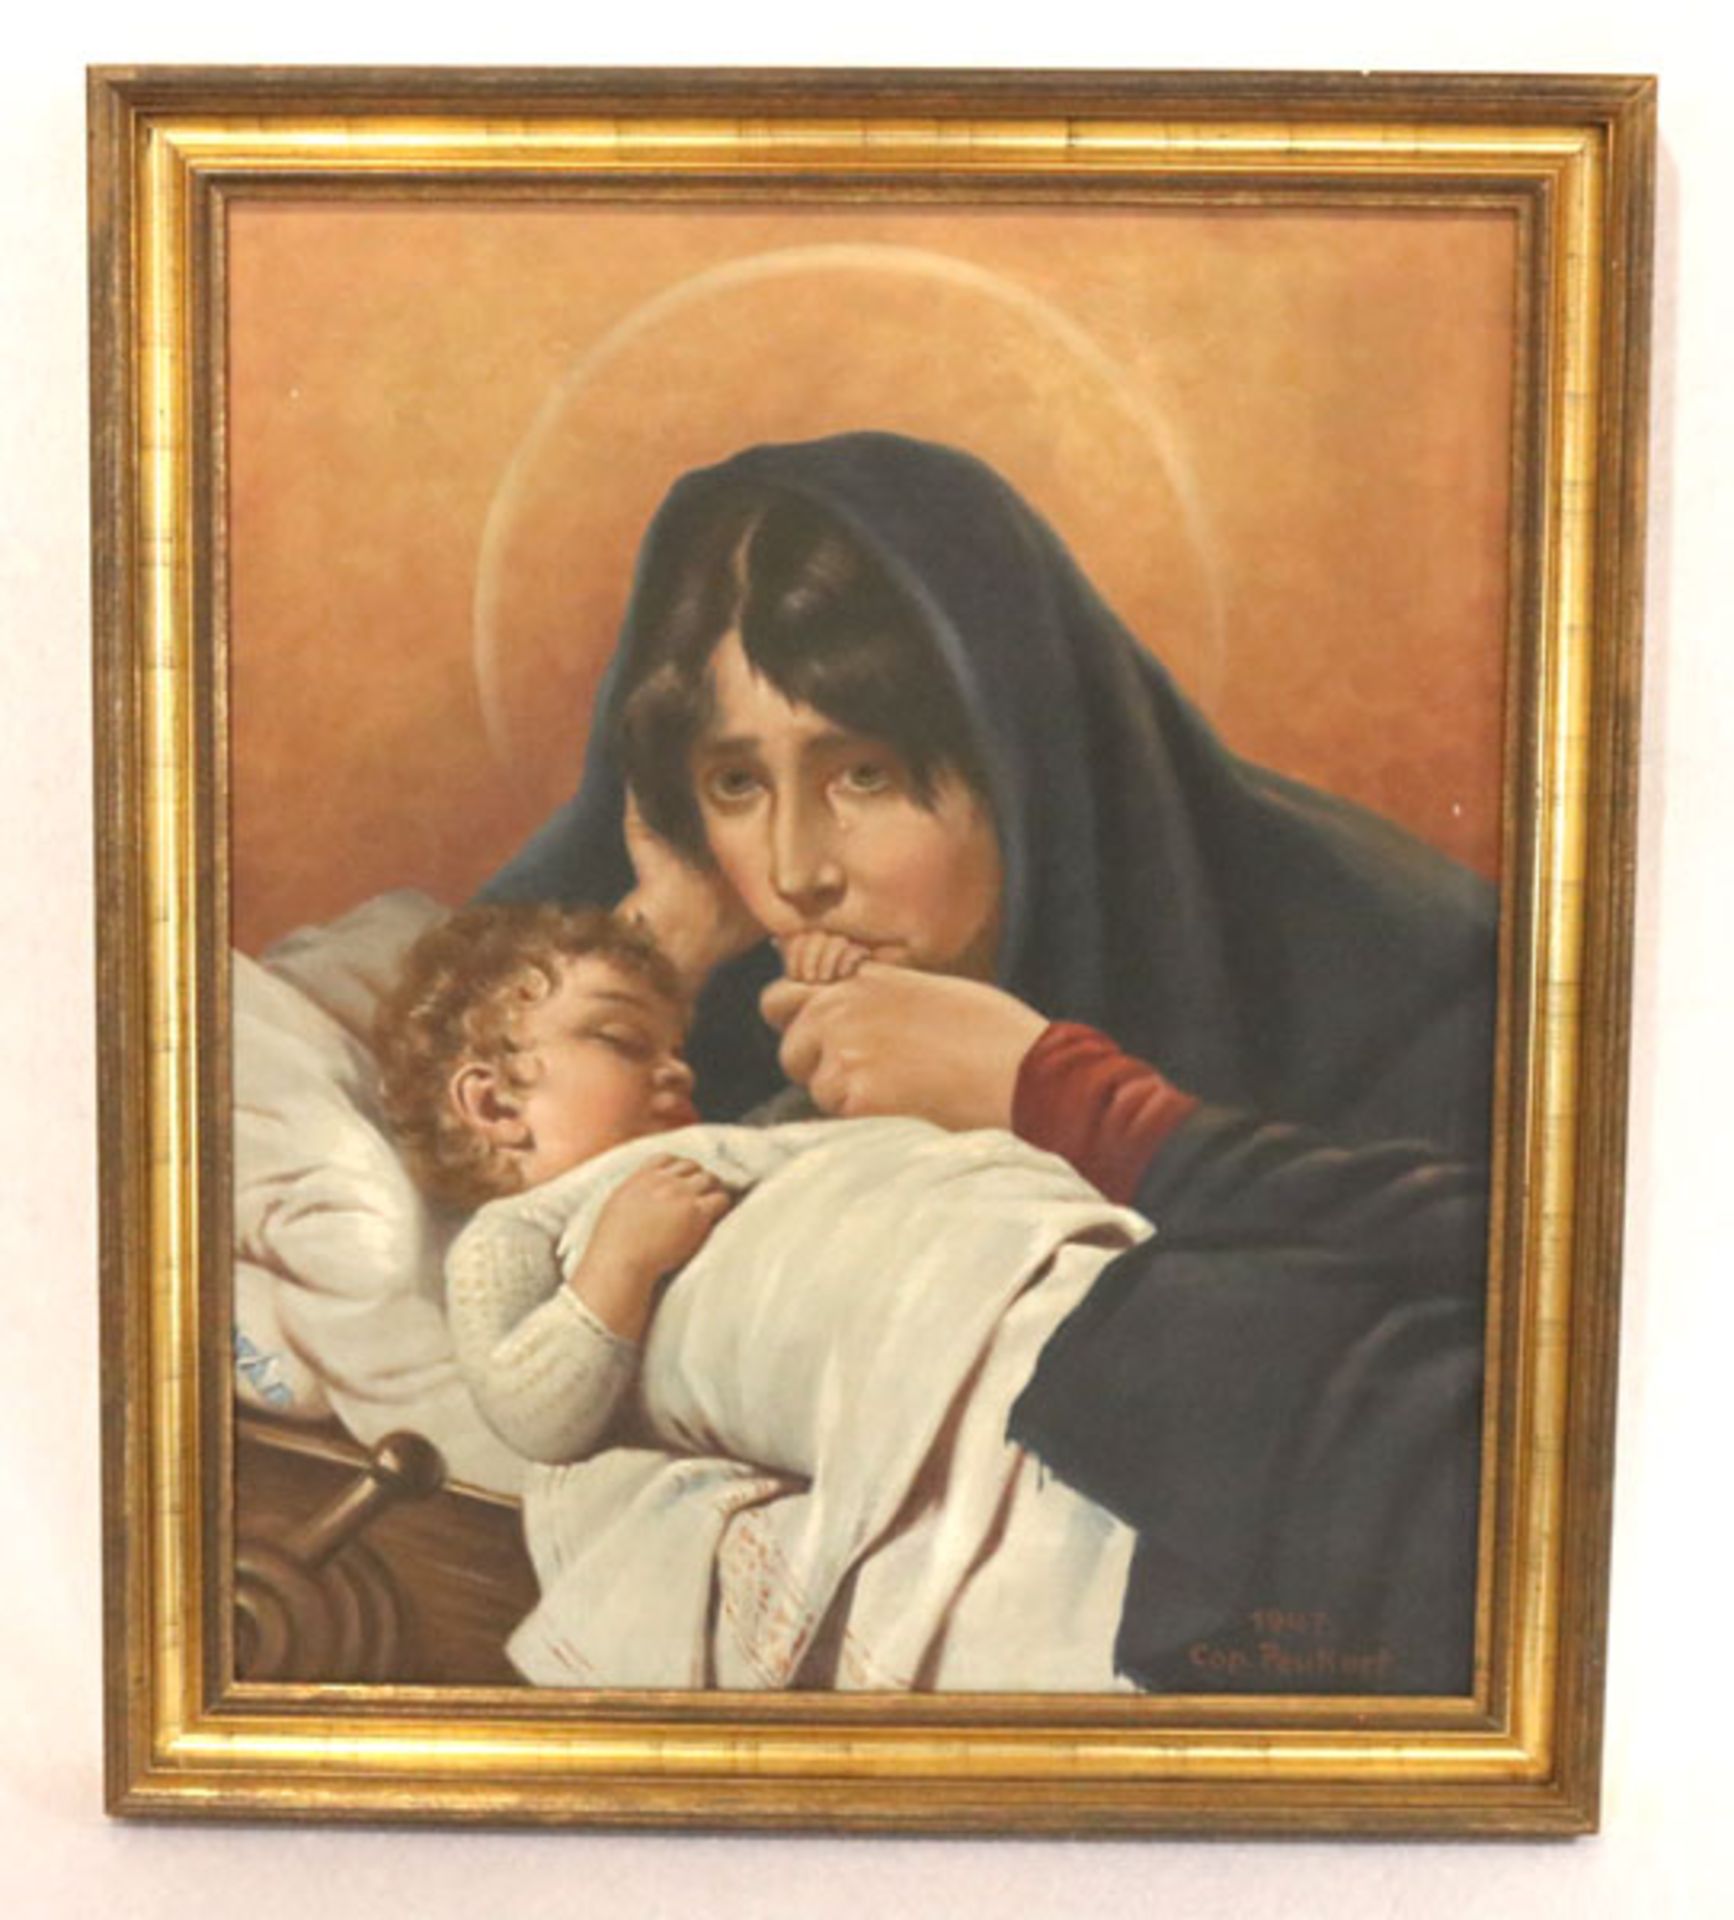 Gemälde ÖL/LW 'Mutter mit Kind', Cop. Peukort, 1947, gerahmt, Rahmen leicht bestossen, incl.